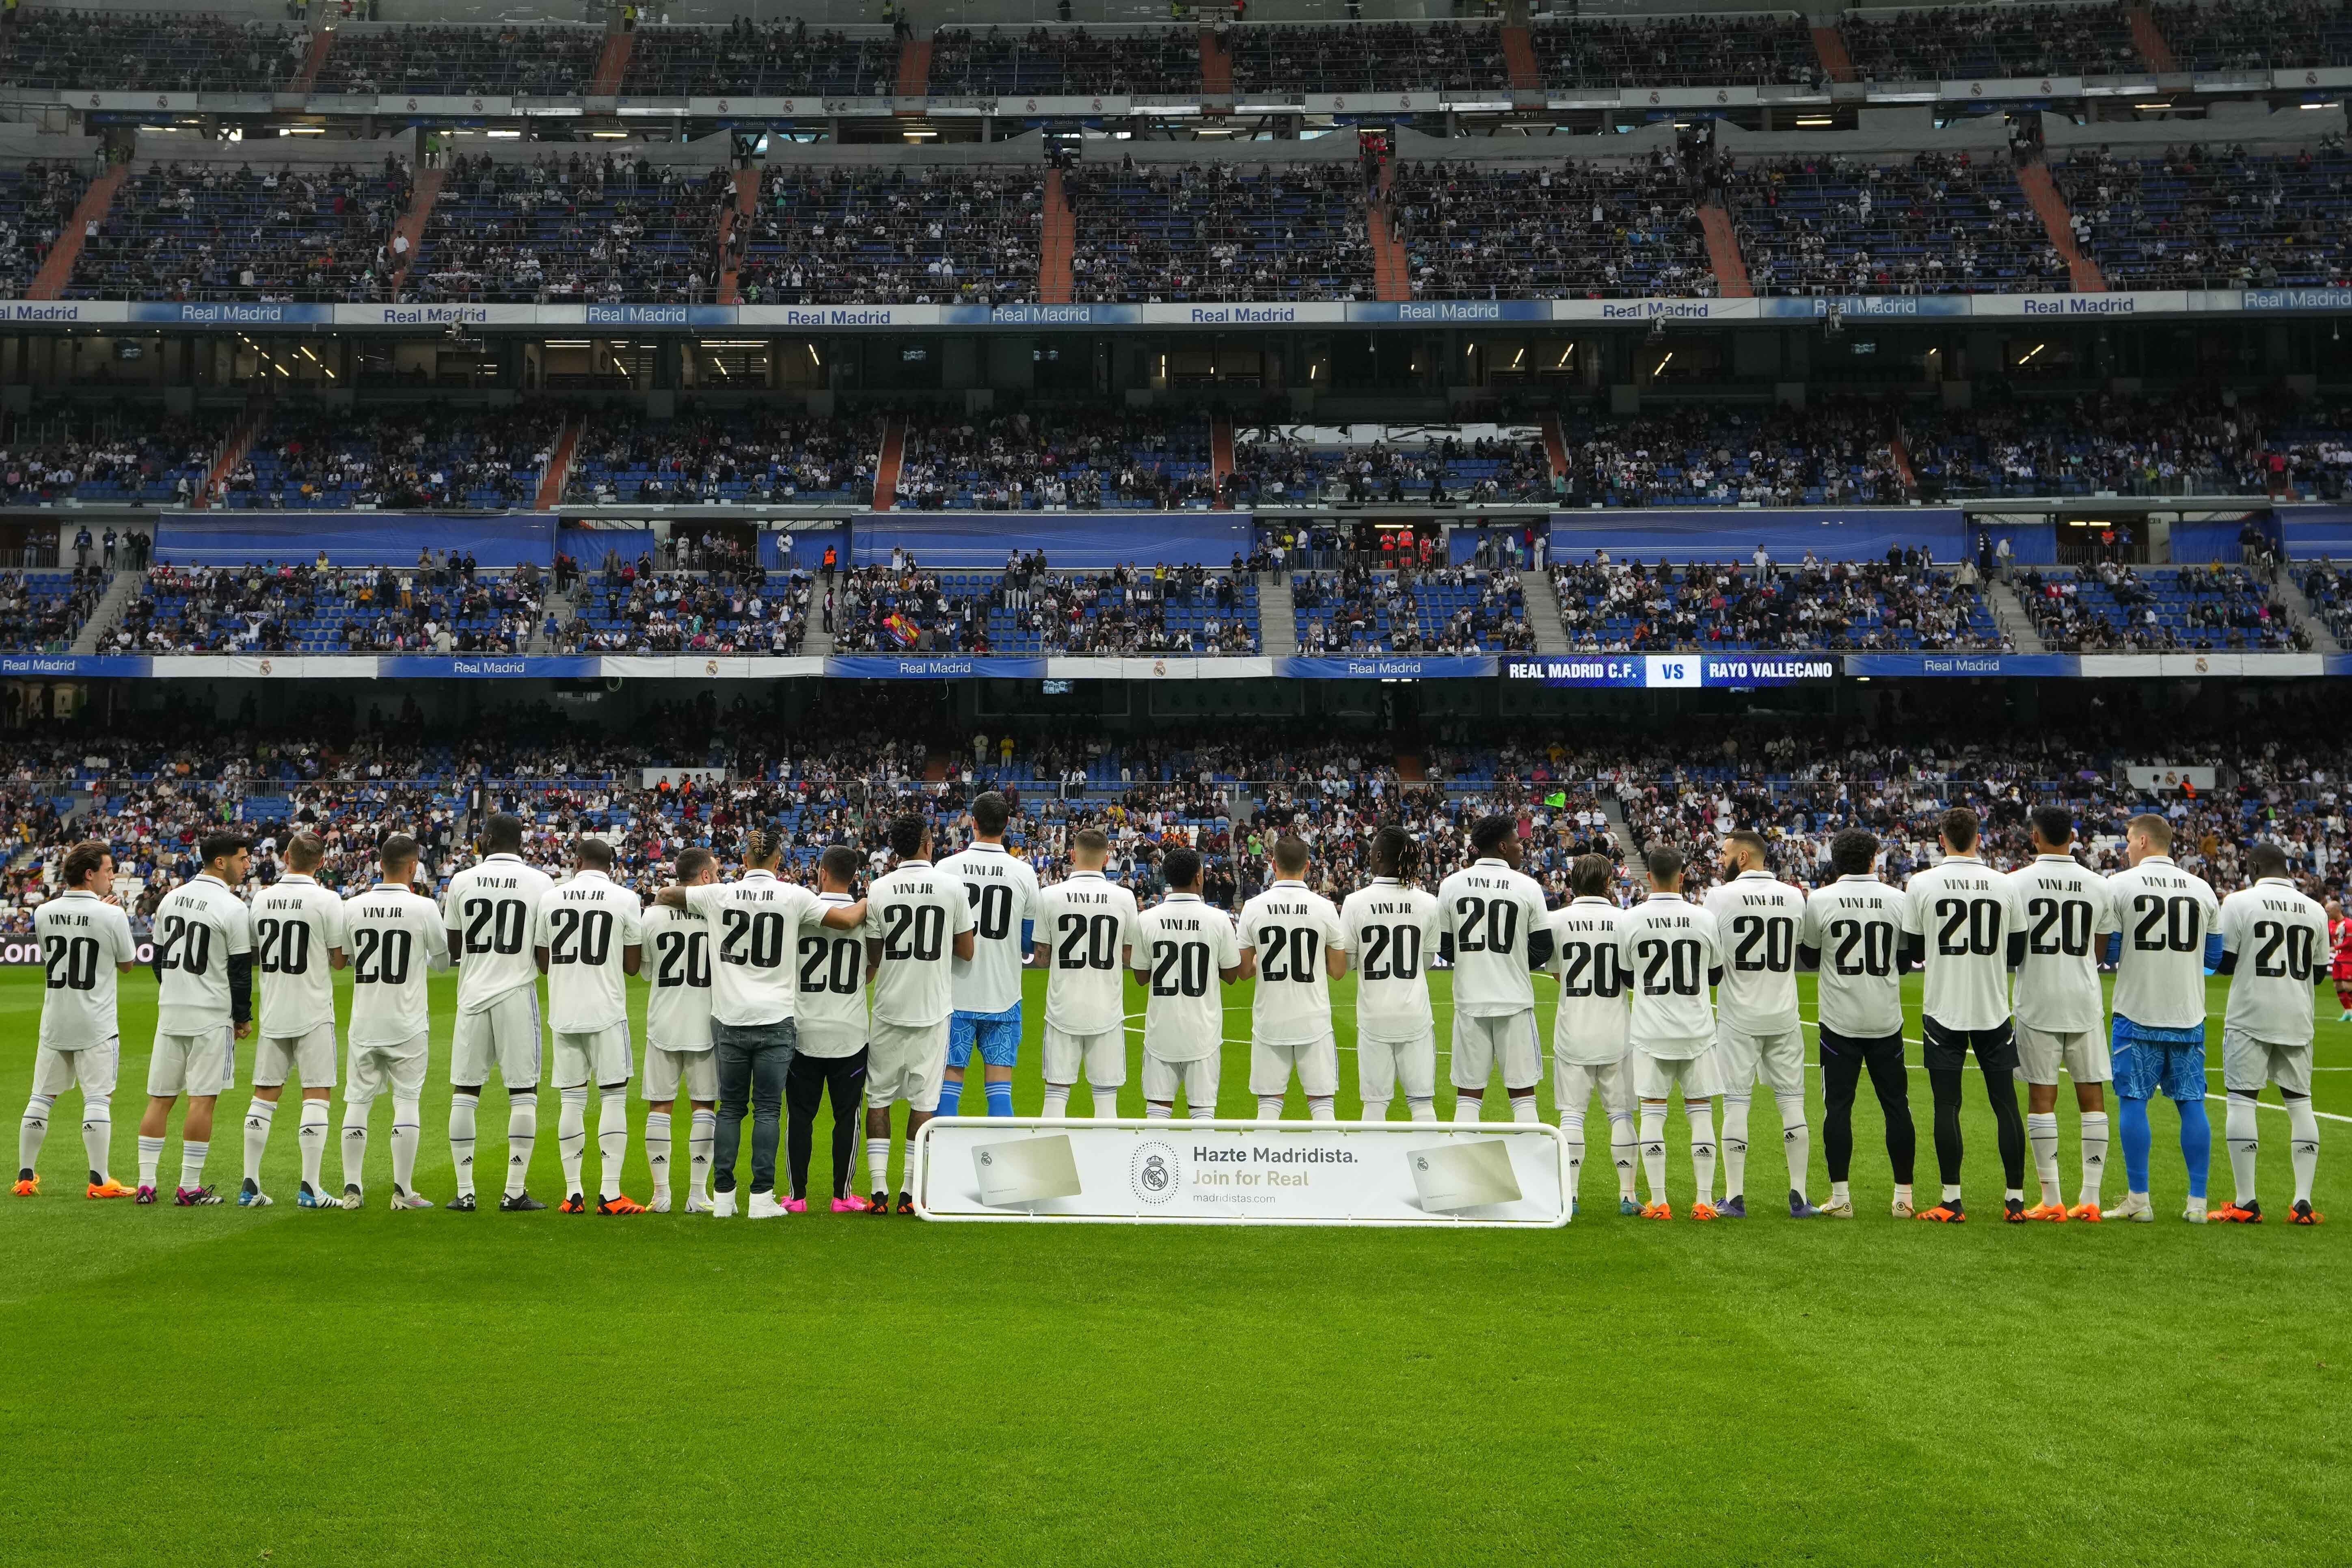 Real Madrid: La camiseta del Real Madrid, la más buscada del mundo